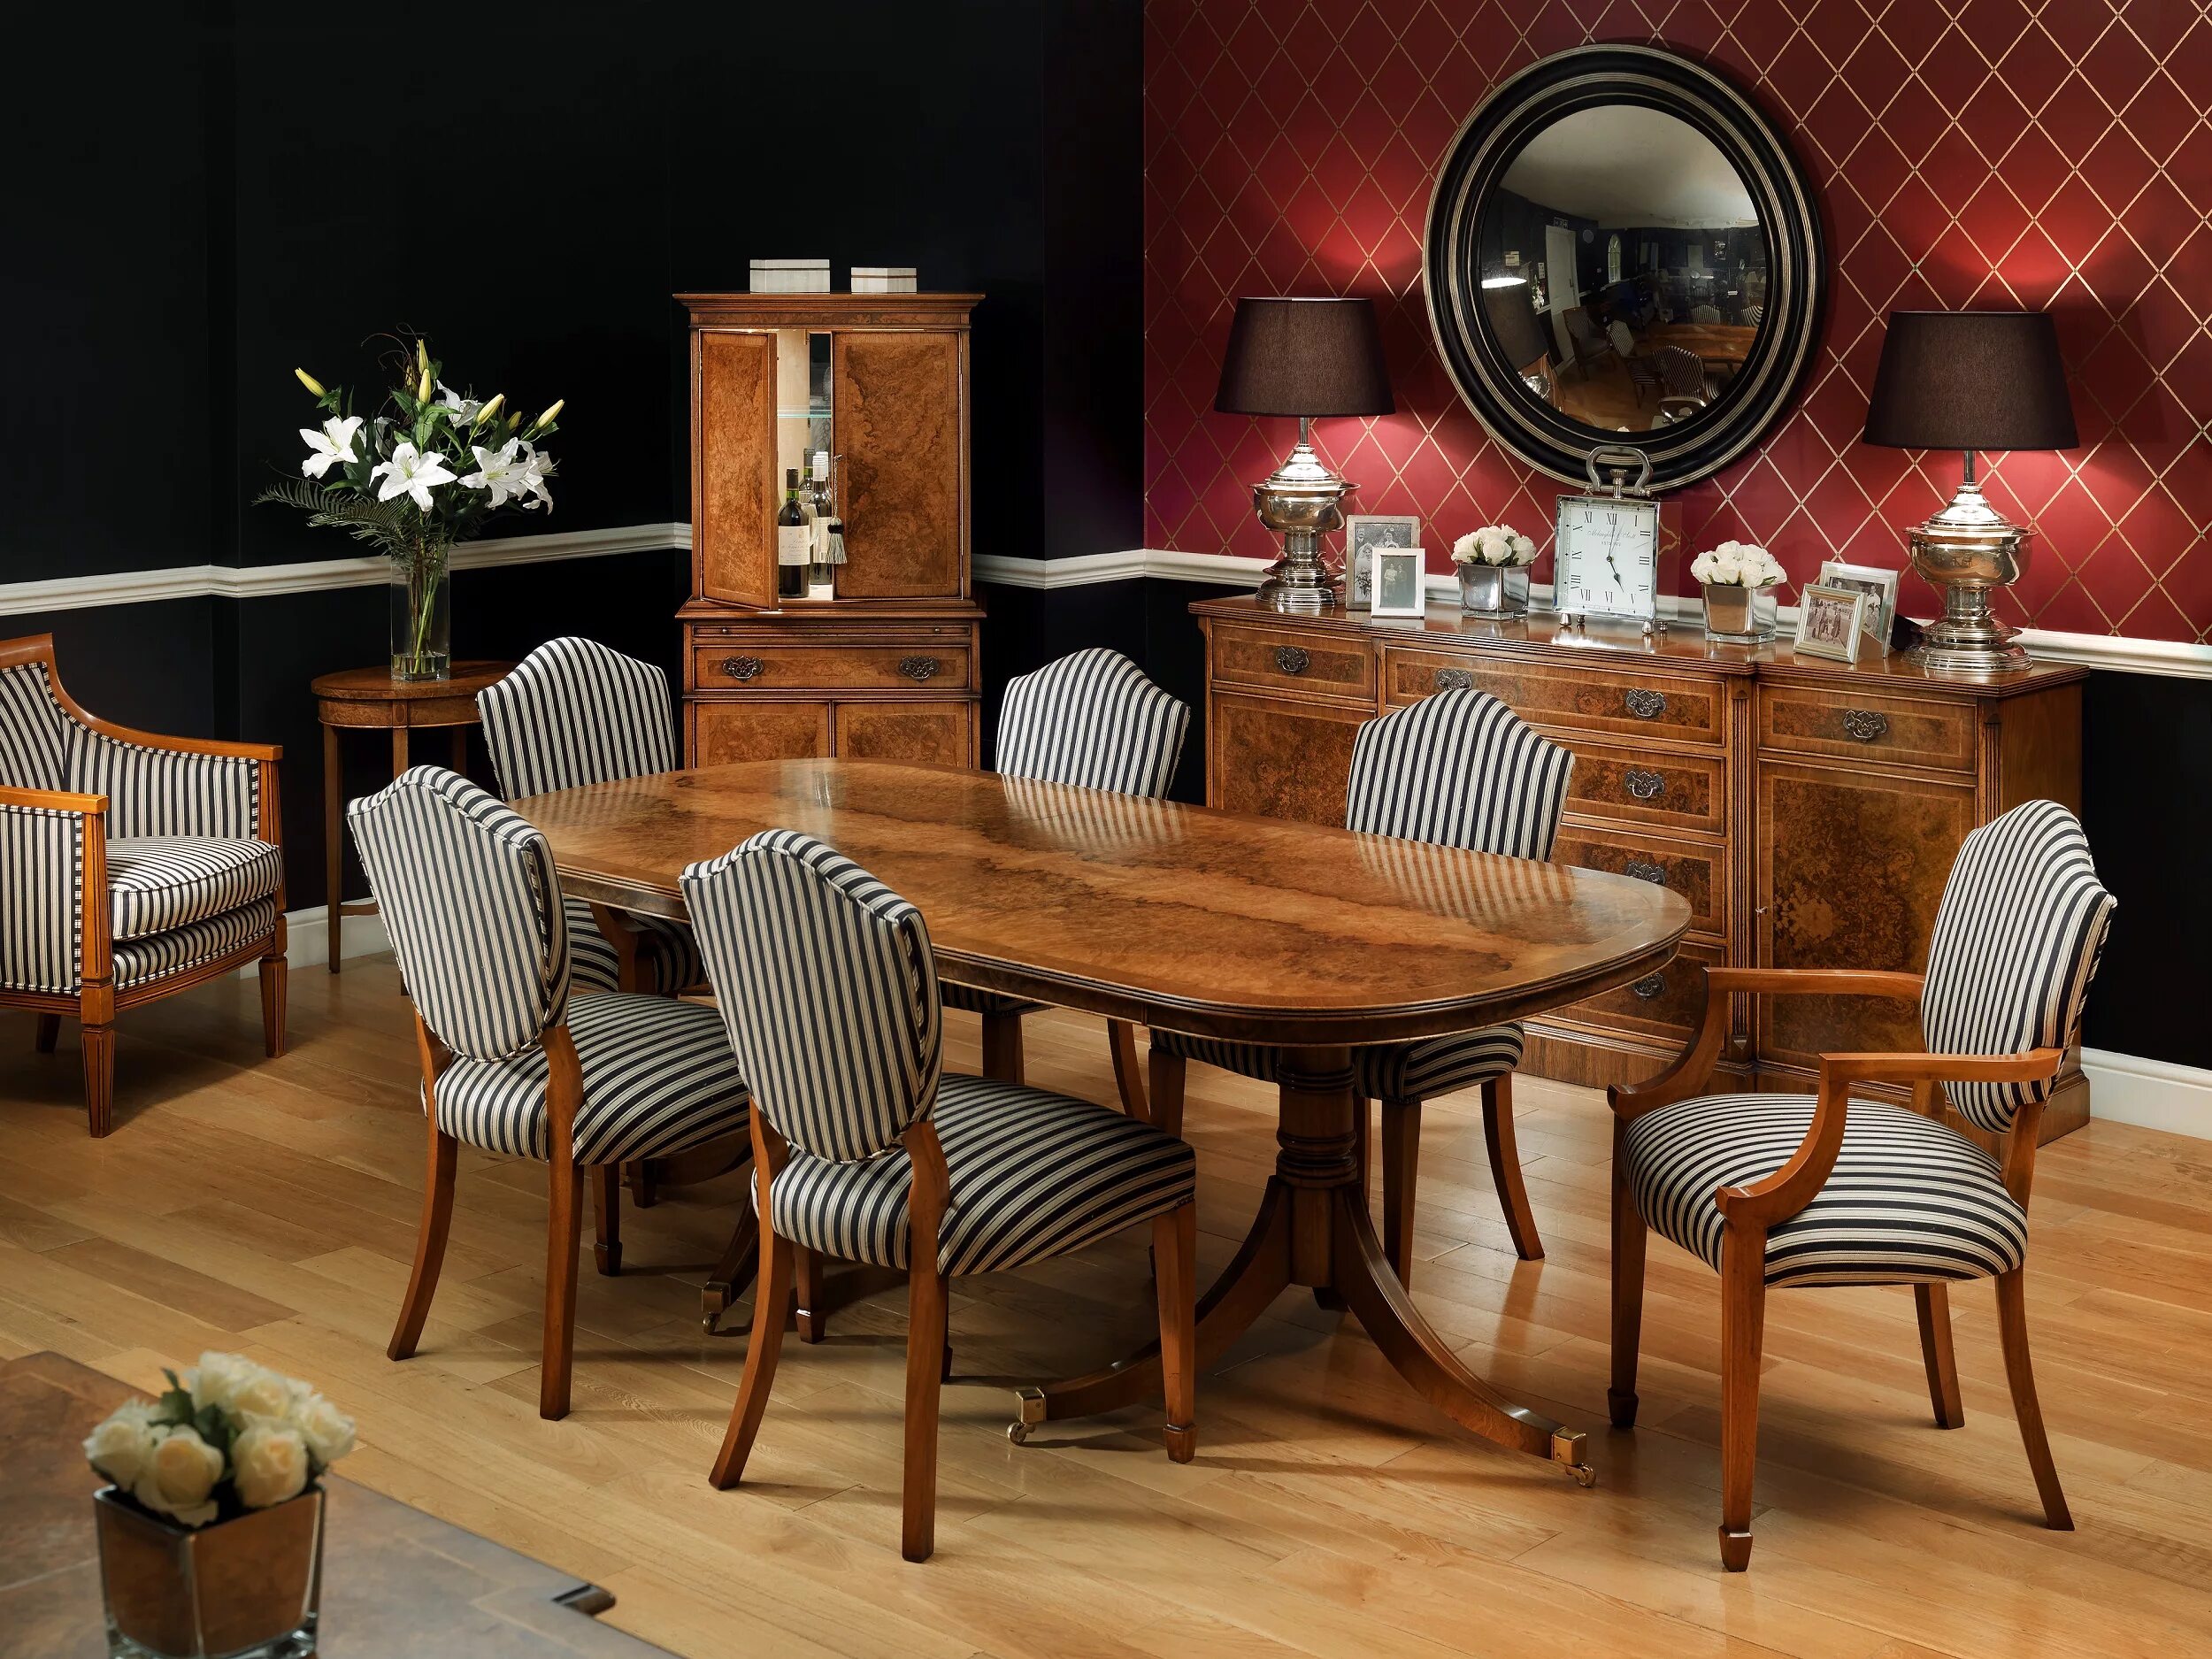 Кипи стол. Мебель Walnut Dining Table. Английский стиль столы и стулья. Обеденный стол в английском стиле. Обеденный стол в григорианском стиле.